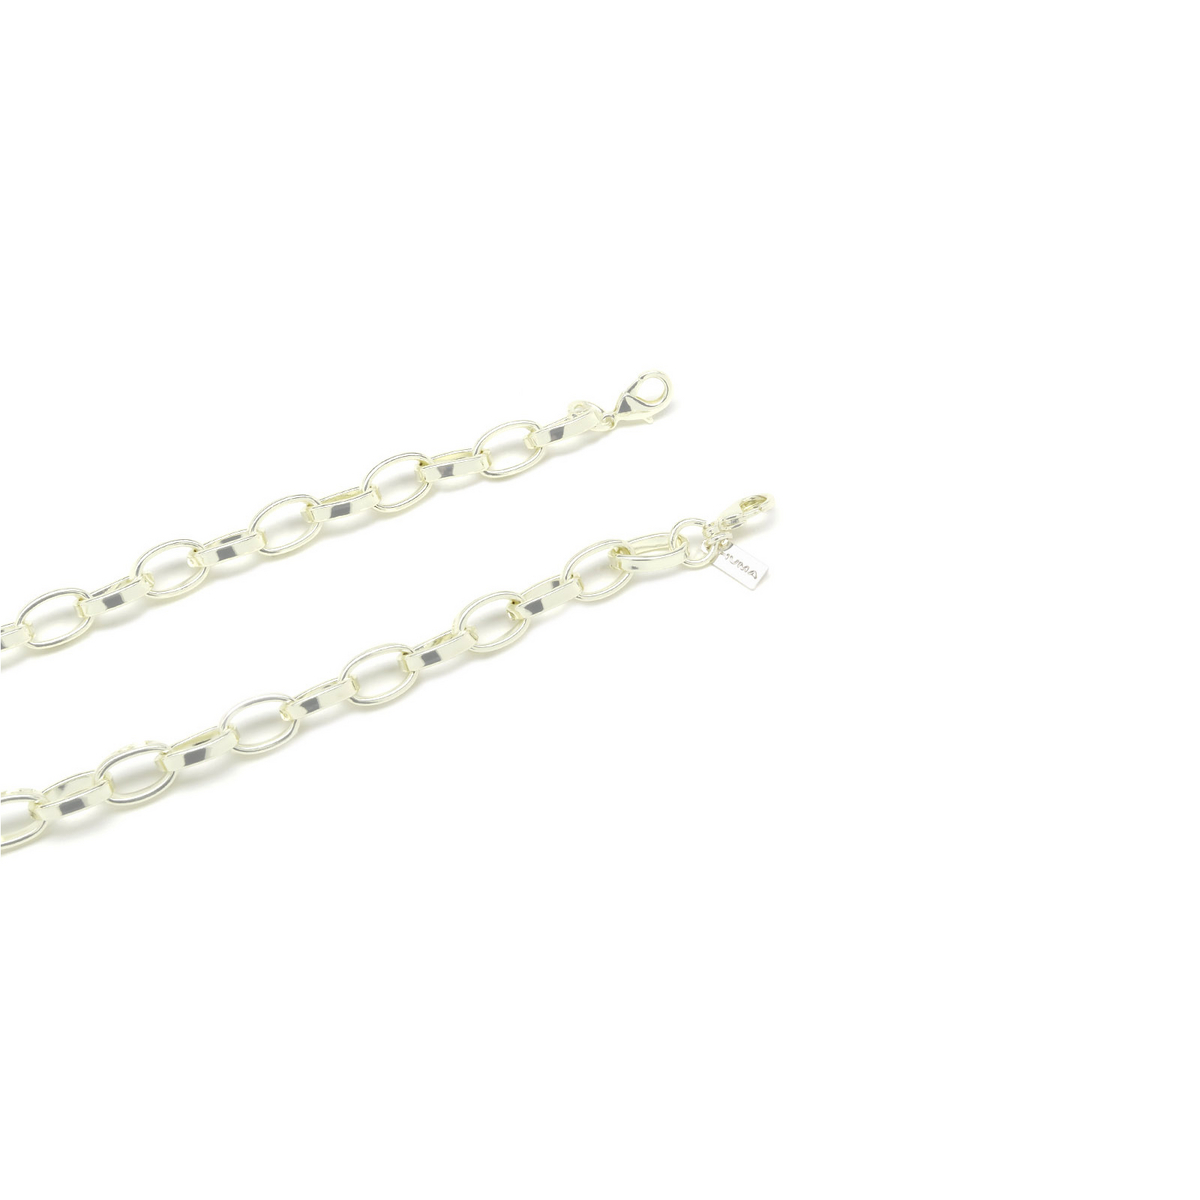 Huma® Accessories: Oval Chain color Silver P18 - 1/3.